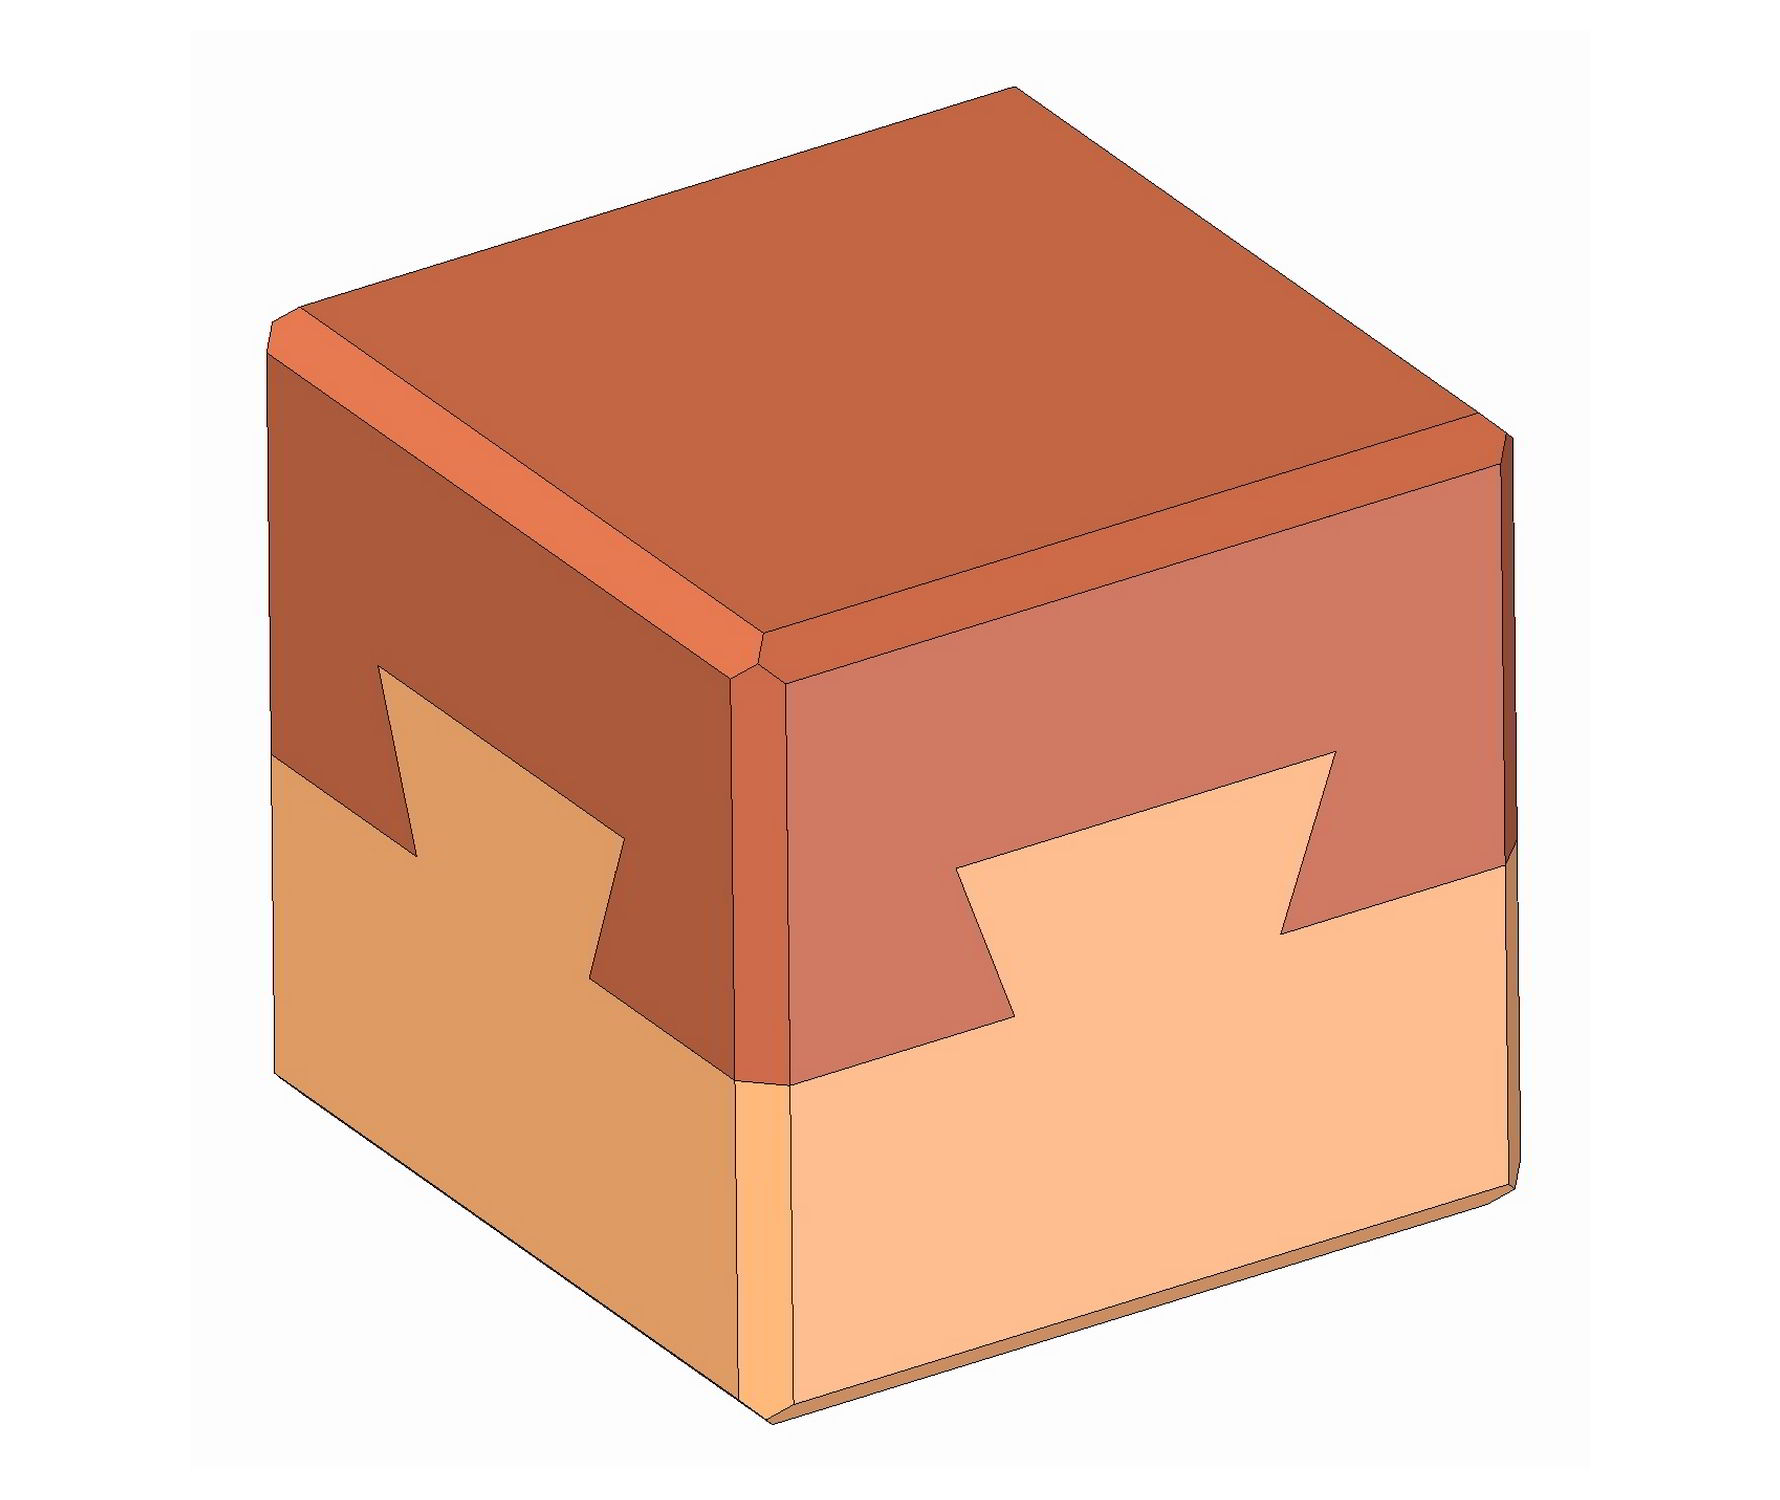 Dovetail Puzzle Box Plans